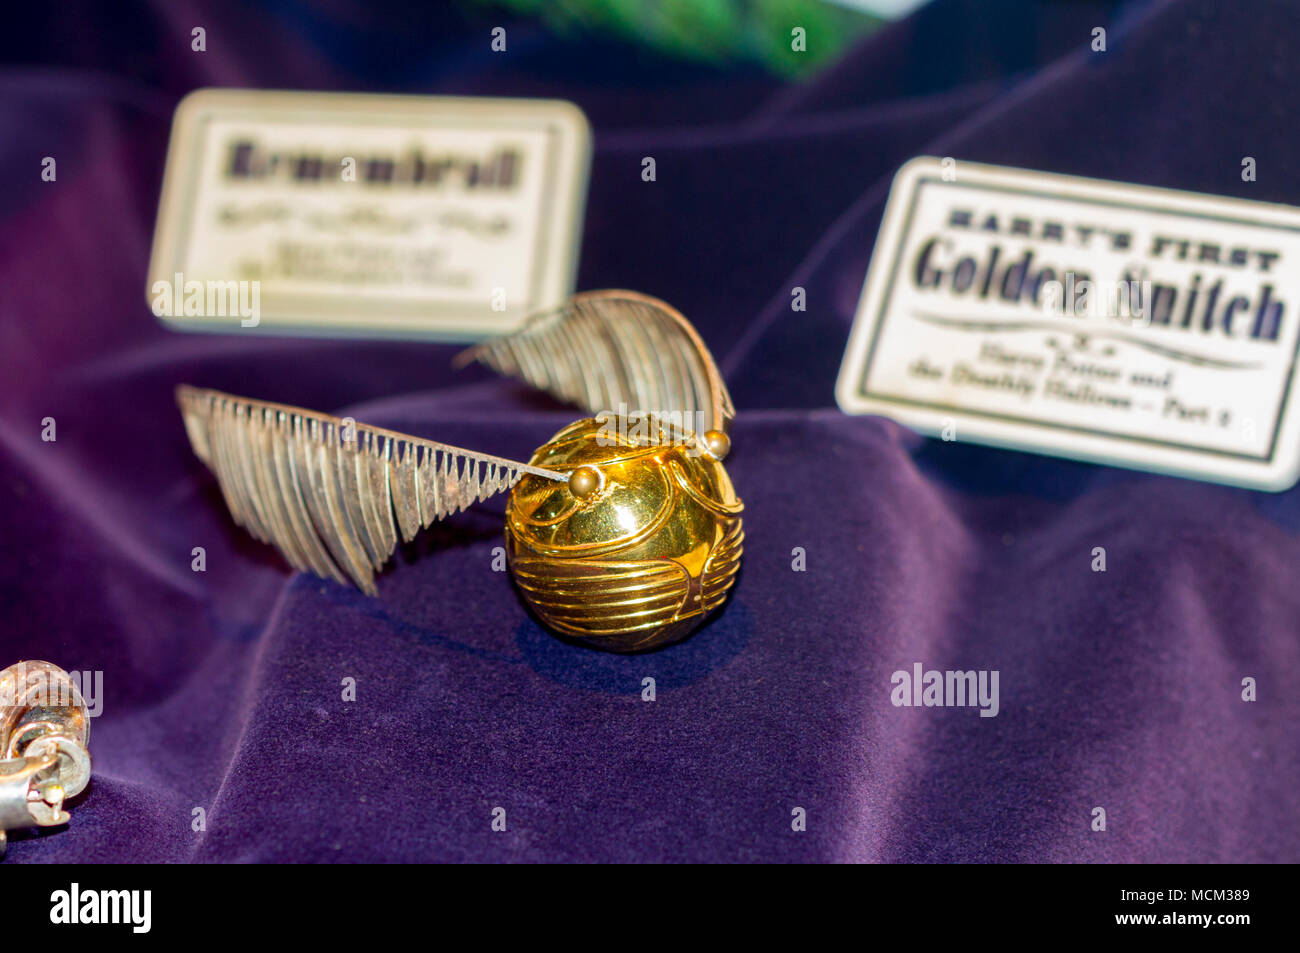 Goldener Schnatz Harry Potter Redaktionelles Stockbild - Illustration